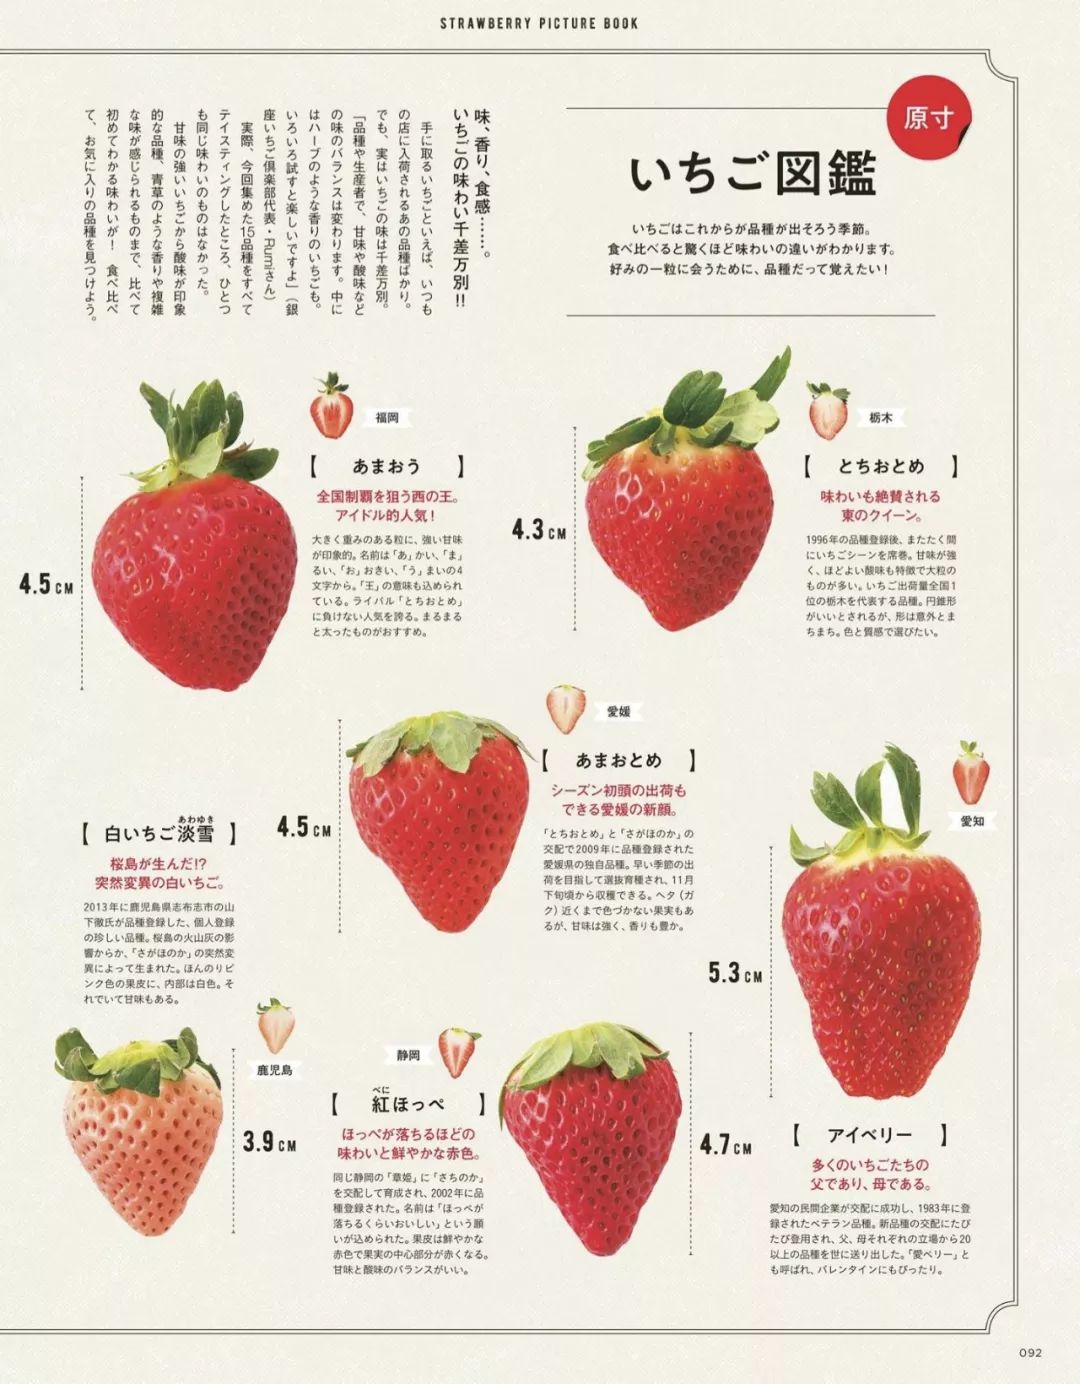 日本人對草莓的解讀 遠遠超出了很多人的認知範圍 太誘人 新鮮日本 微文庫